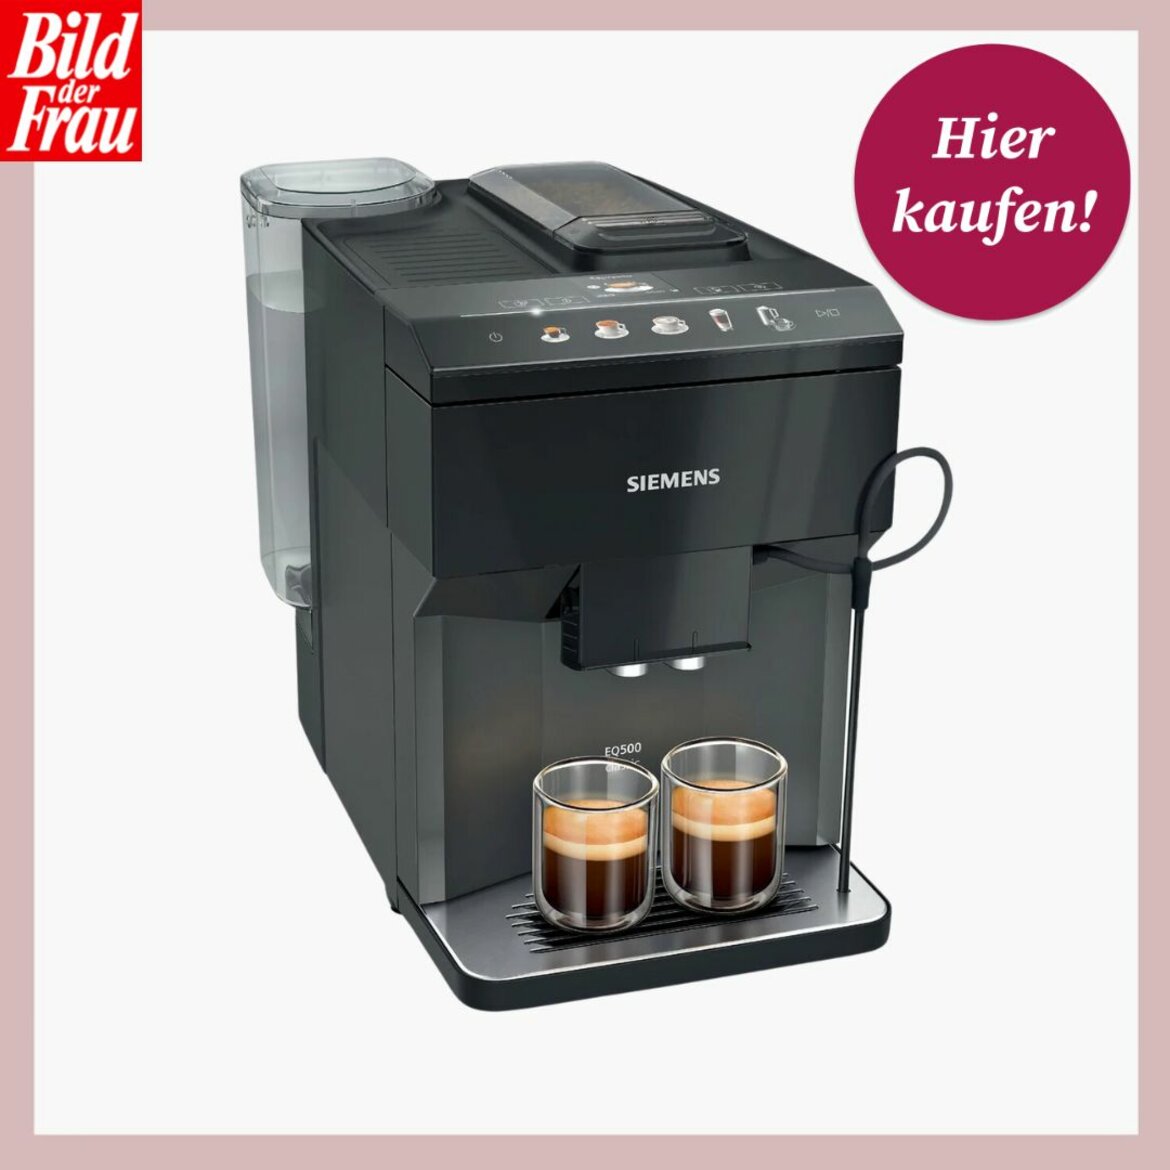 Moderne Siemens-Kaffeemaschine in Schwarz mit zwei gefüllten Espressogläsern und Bedienfeld mit Symbolen. | © Lidl